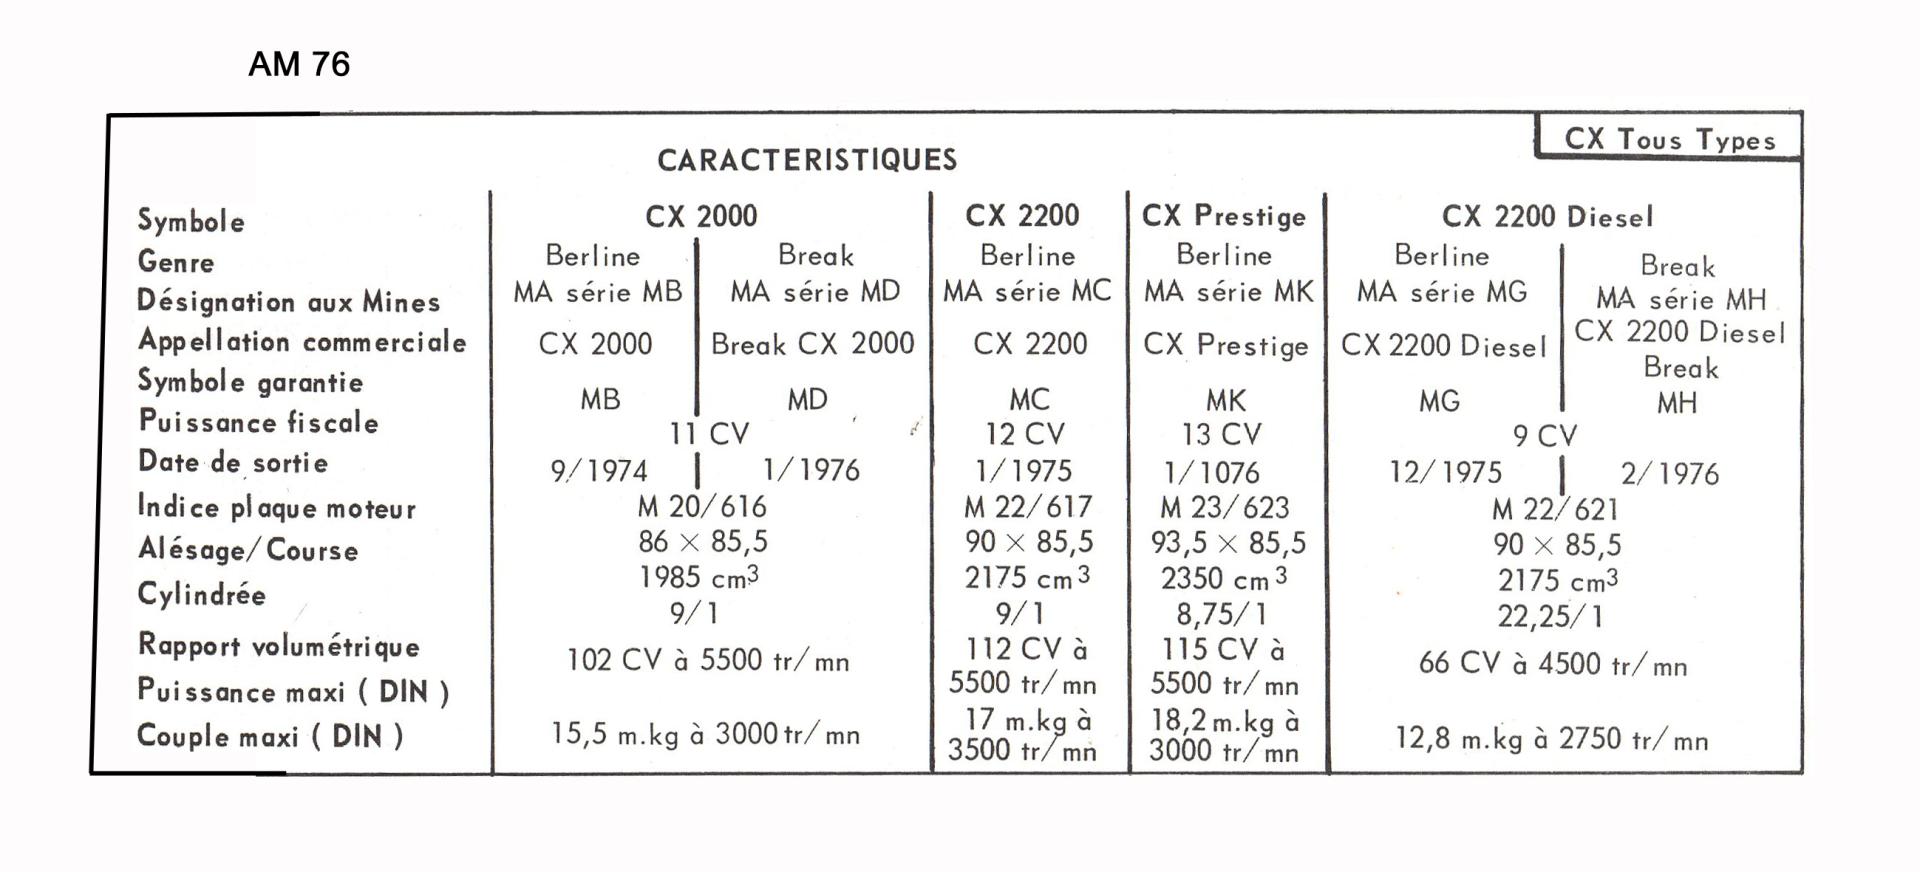 AM76 CX caracteristiques berlines et breaks 1976